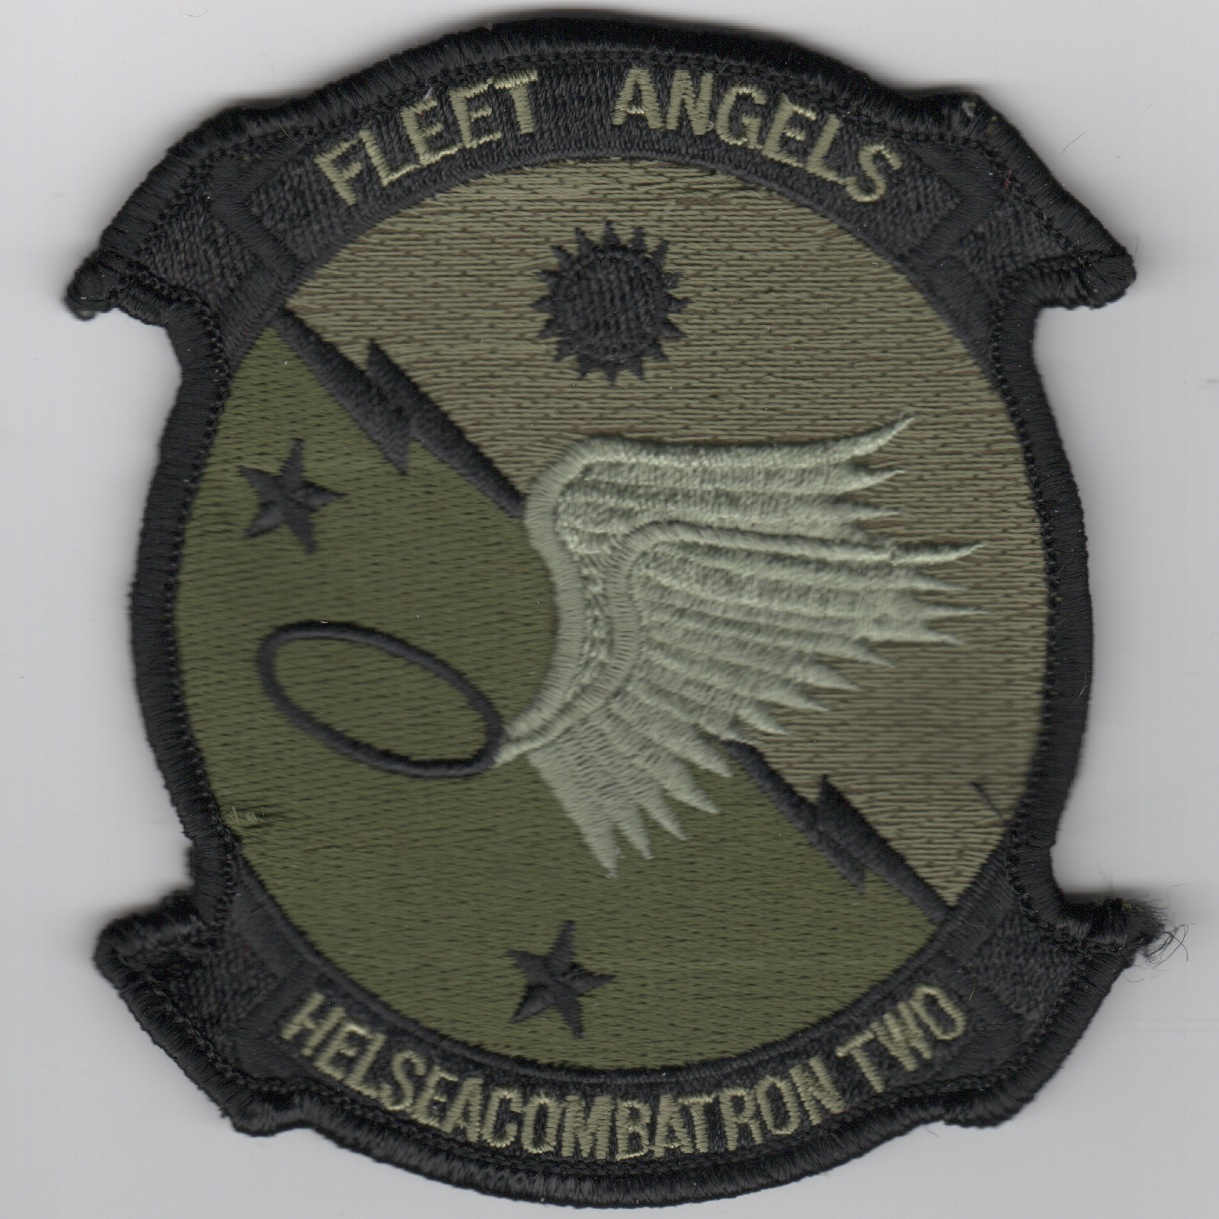 HS/HSC-2 Squadron Patch (Subd)